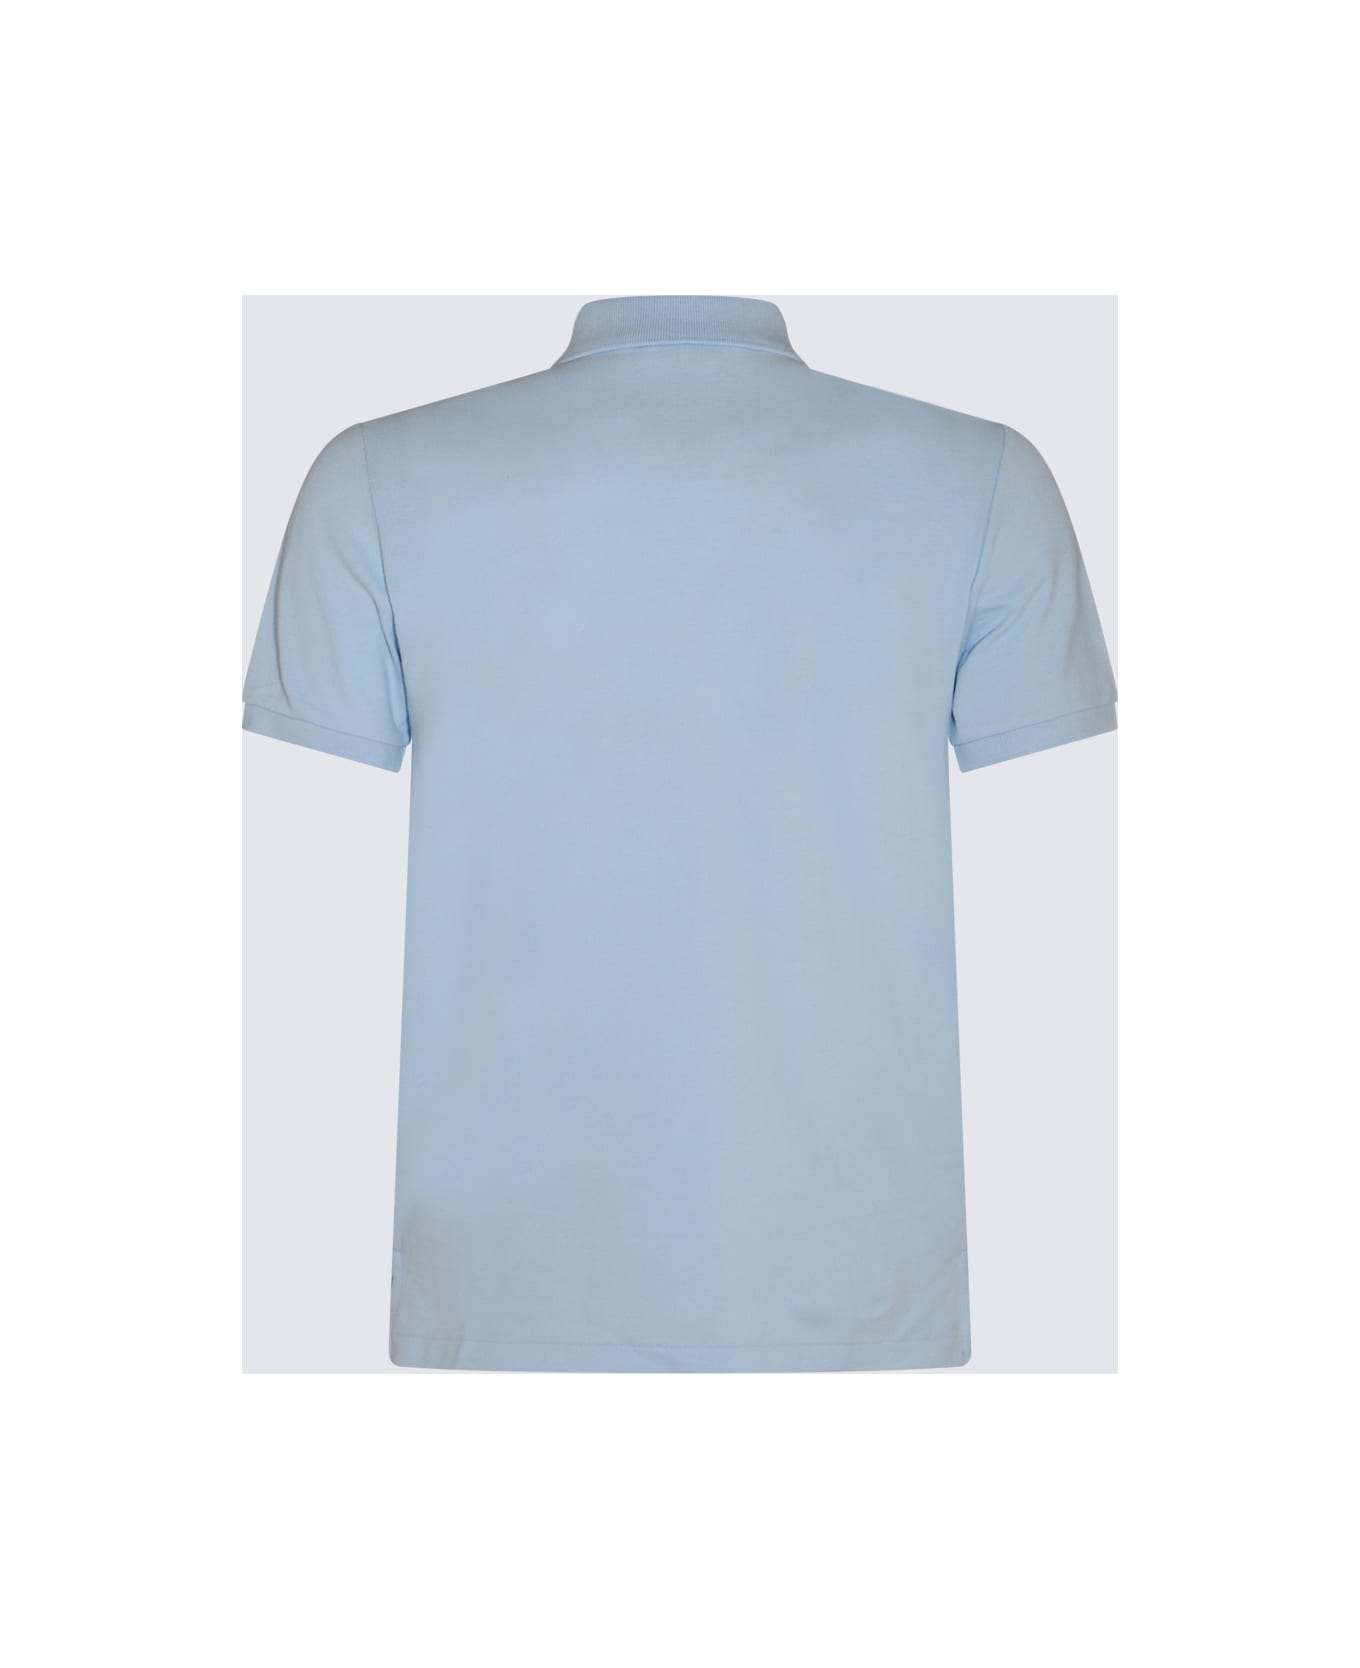 Polo Ralph Lauren Light Blue Cotton Polo Shirt - OFFICE BLUE